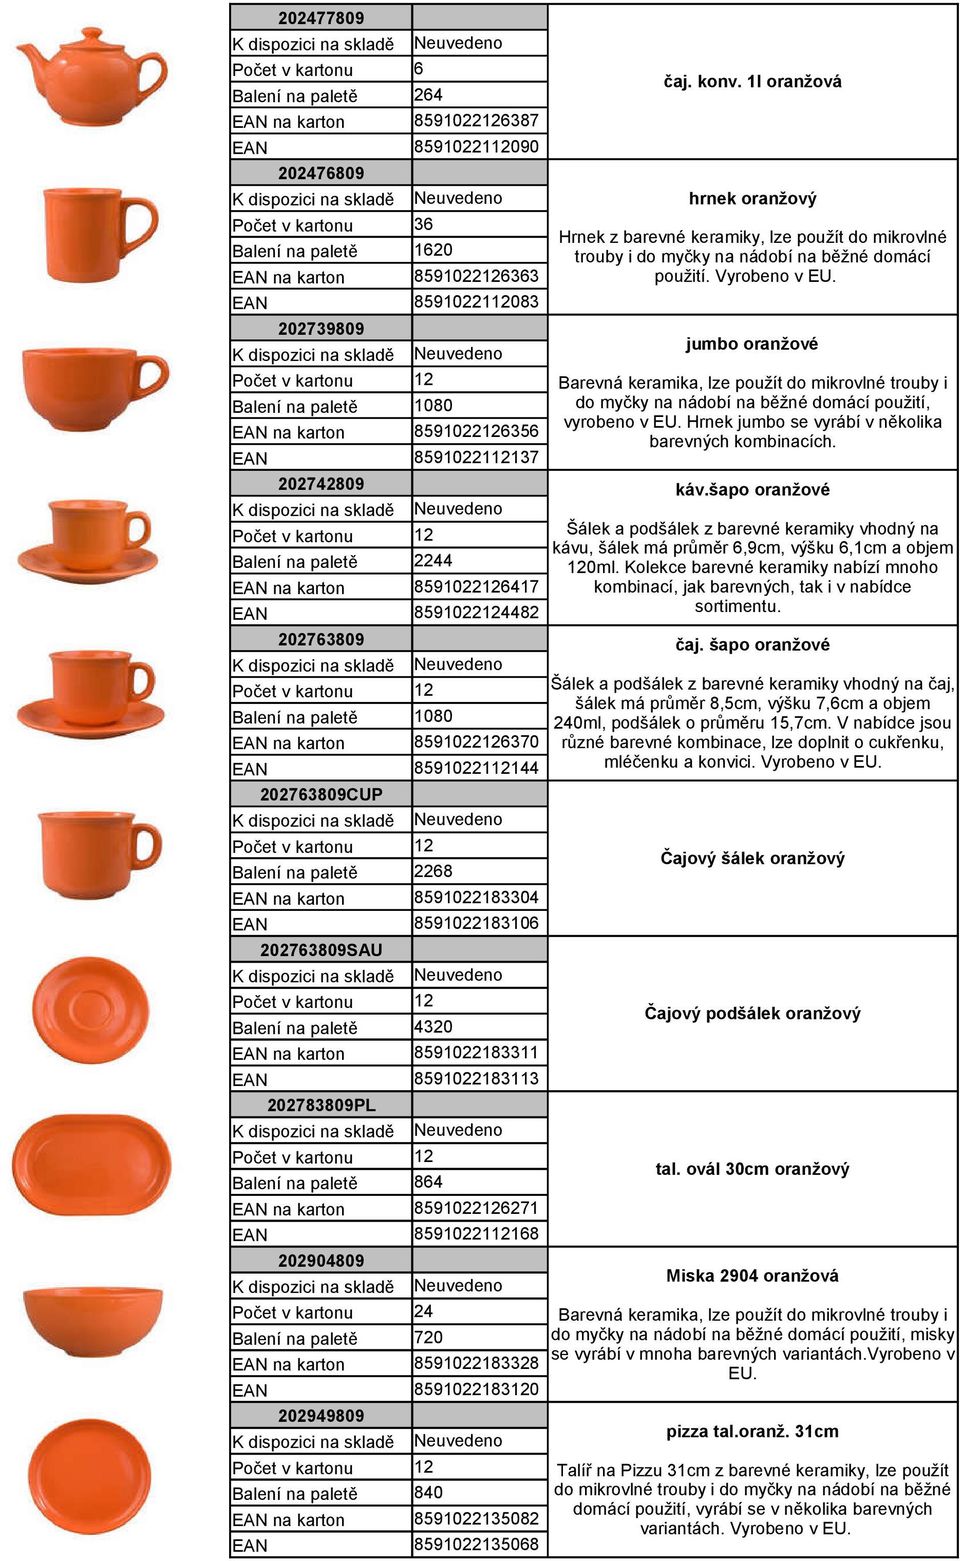 Vyrobeno v EU. jumbo oranžové Barevná keramika, lze použít do mikrovlné trouby i do myčky na nádobí na běžné domácí použití, vyrobeno v EU. Hrnek jumbo se vyrábí v několika barevných kombinacích. čaj.